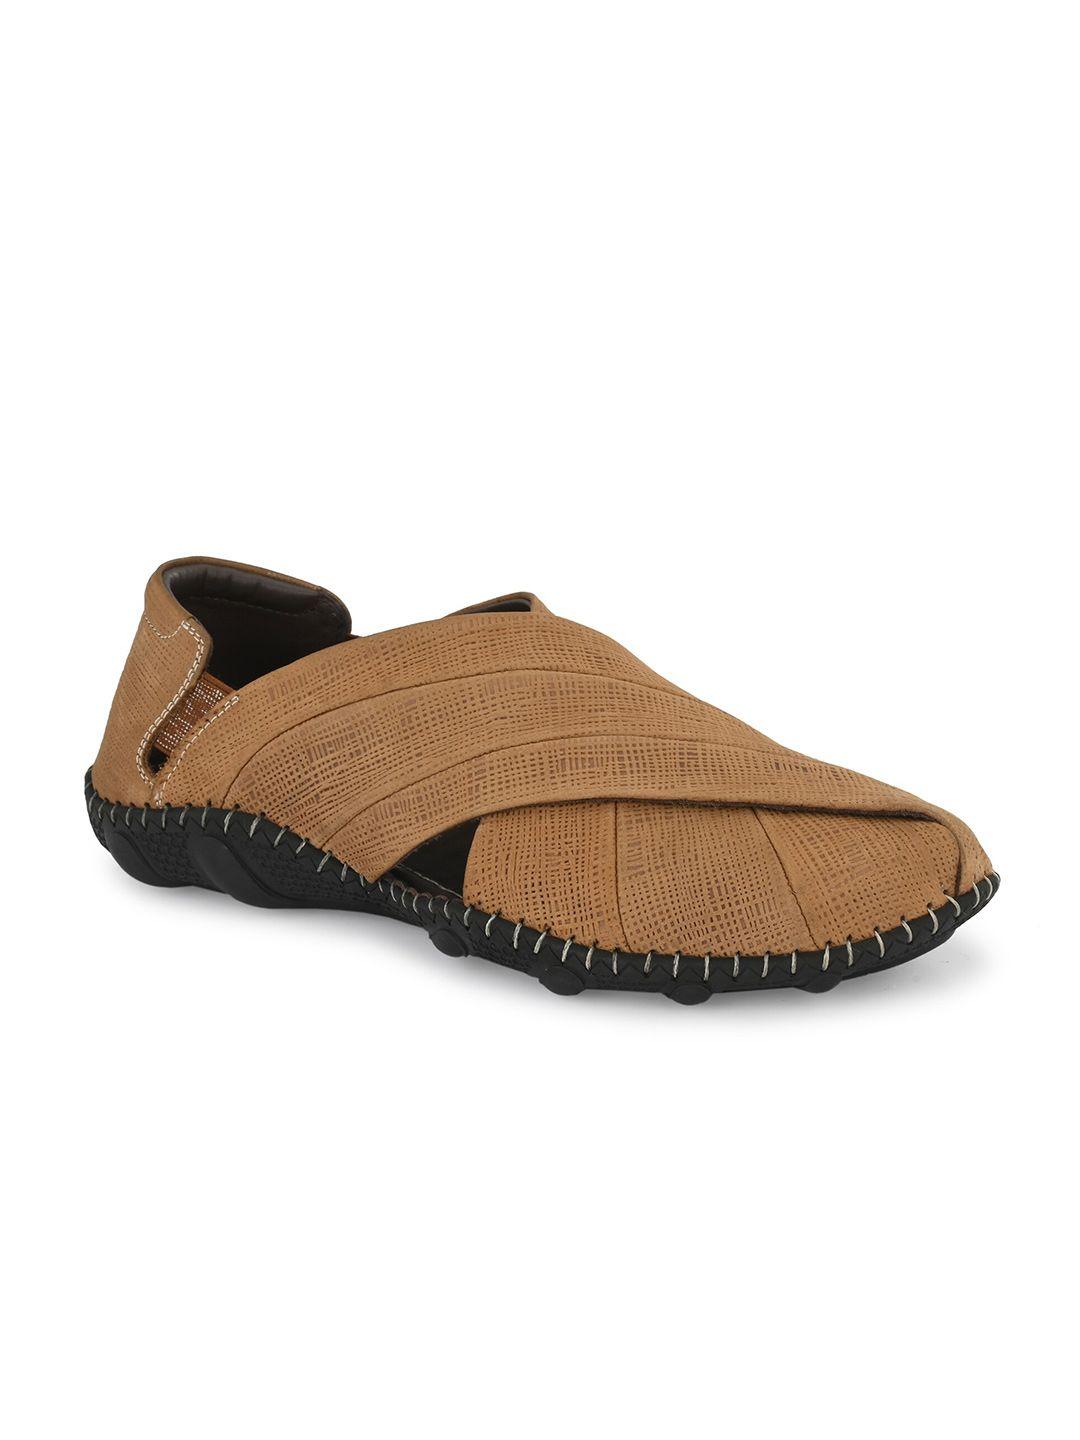 Hitz Men Tan Leather Shoe-Style Sandals